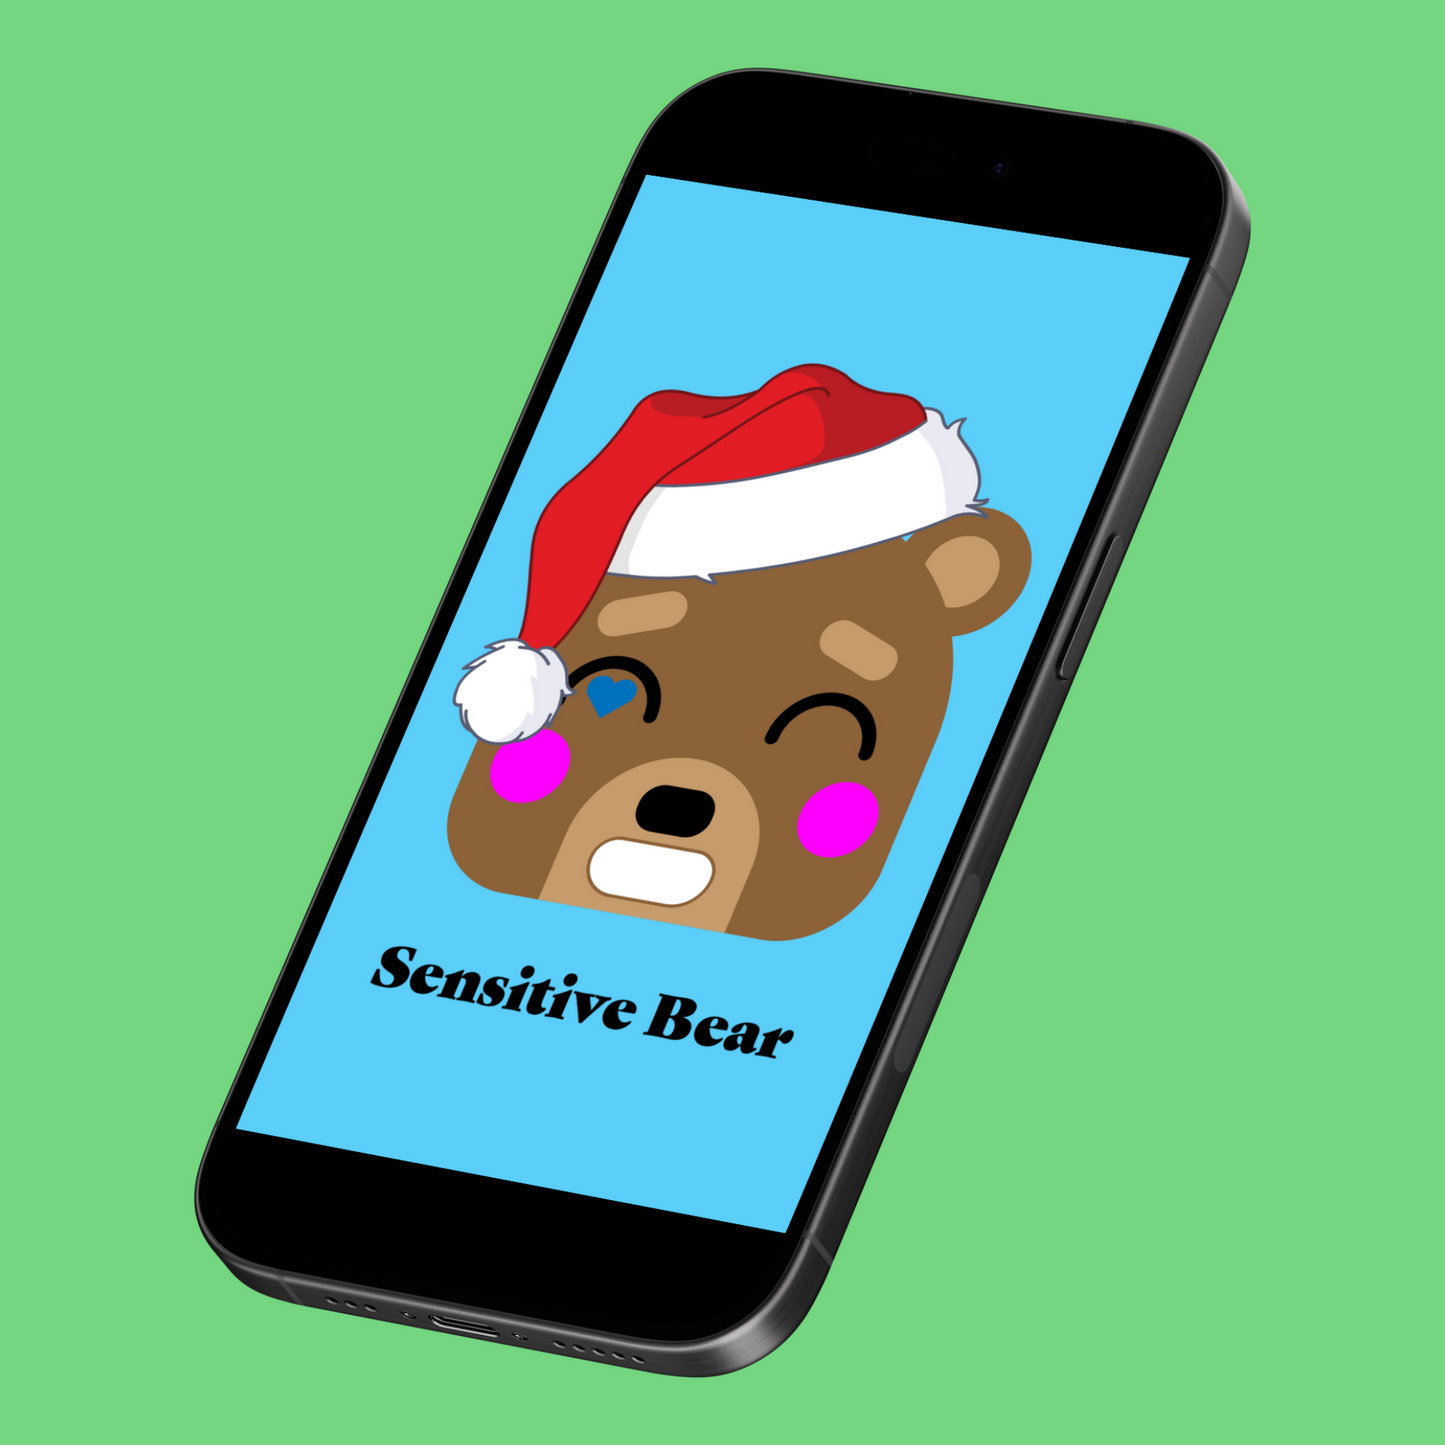 Sensitive Santa Bear iPhone Wallpaper